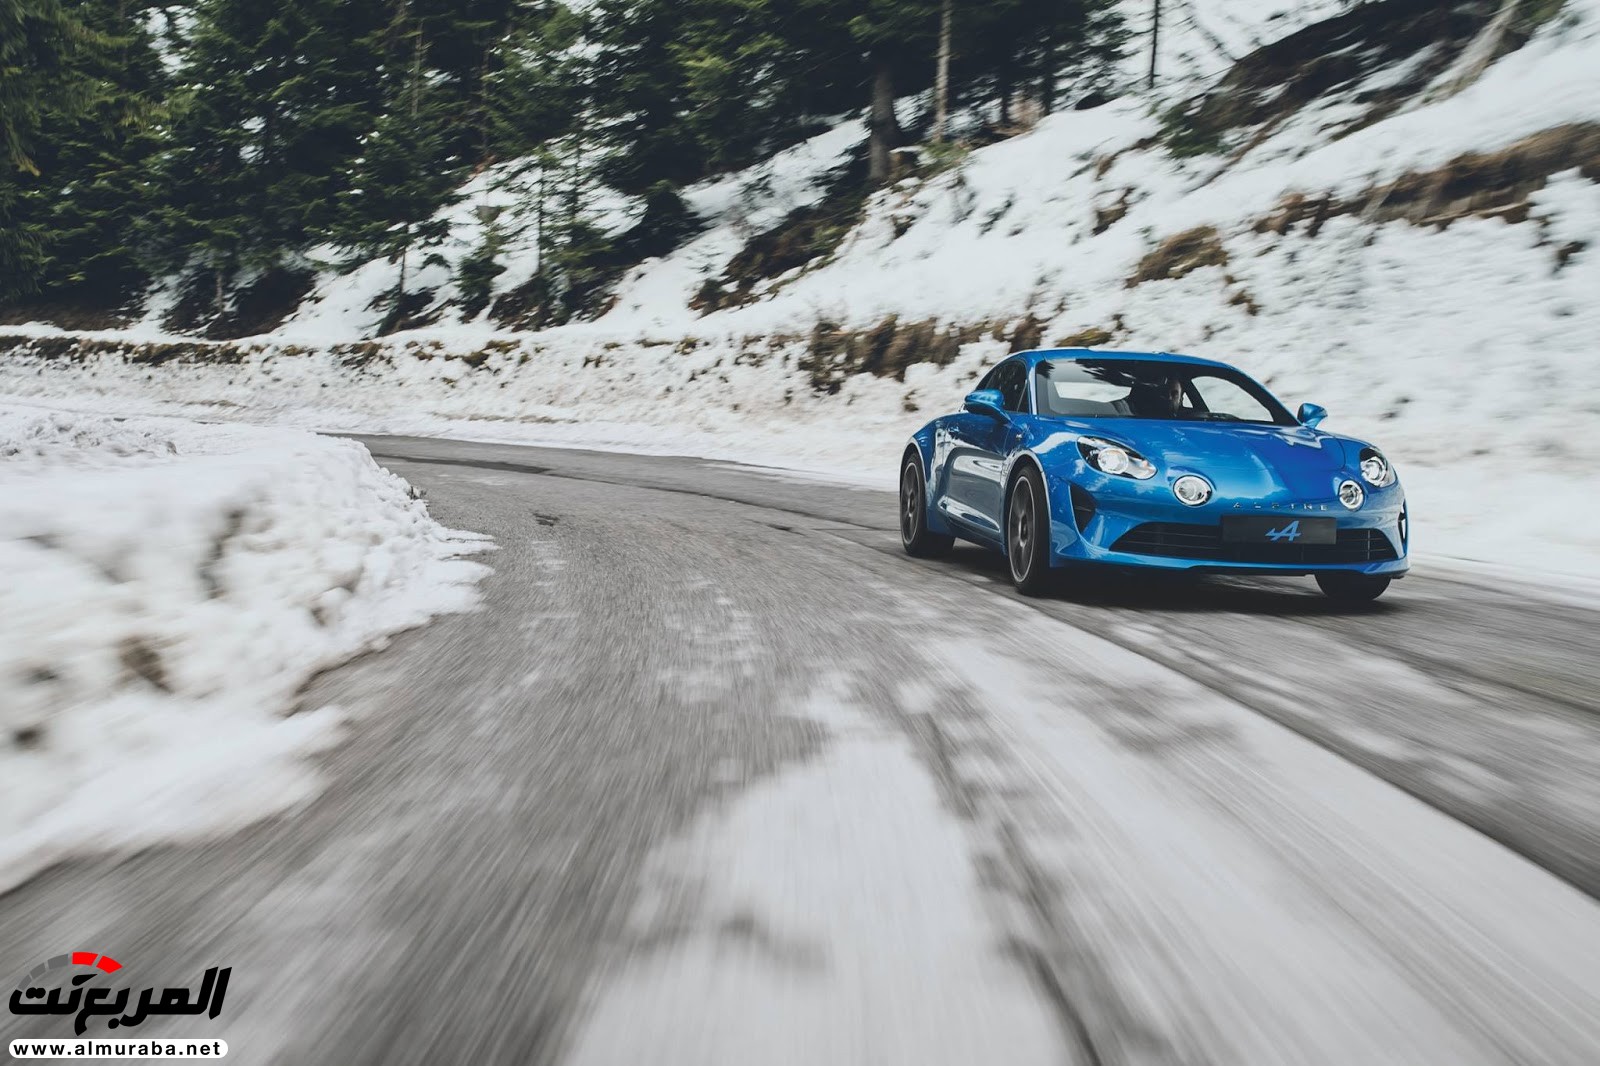 "صور مسربة" تكشف عن عودة "ألباين" بالسيارة الرياضية A110 الجديدة كليا 2018 Alpine 41